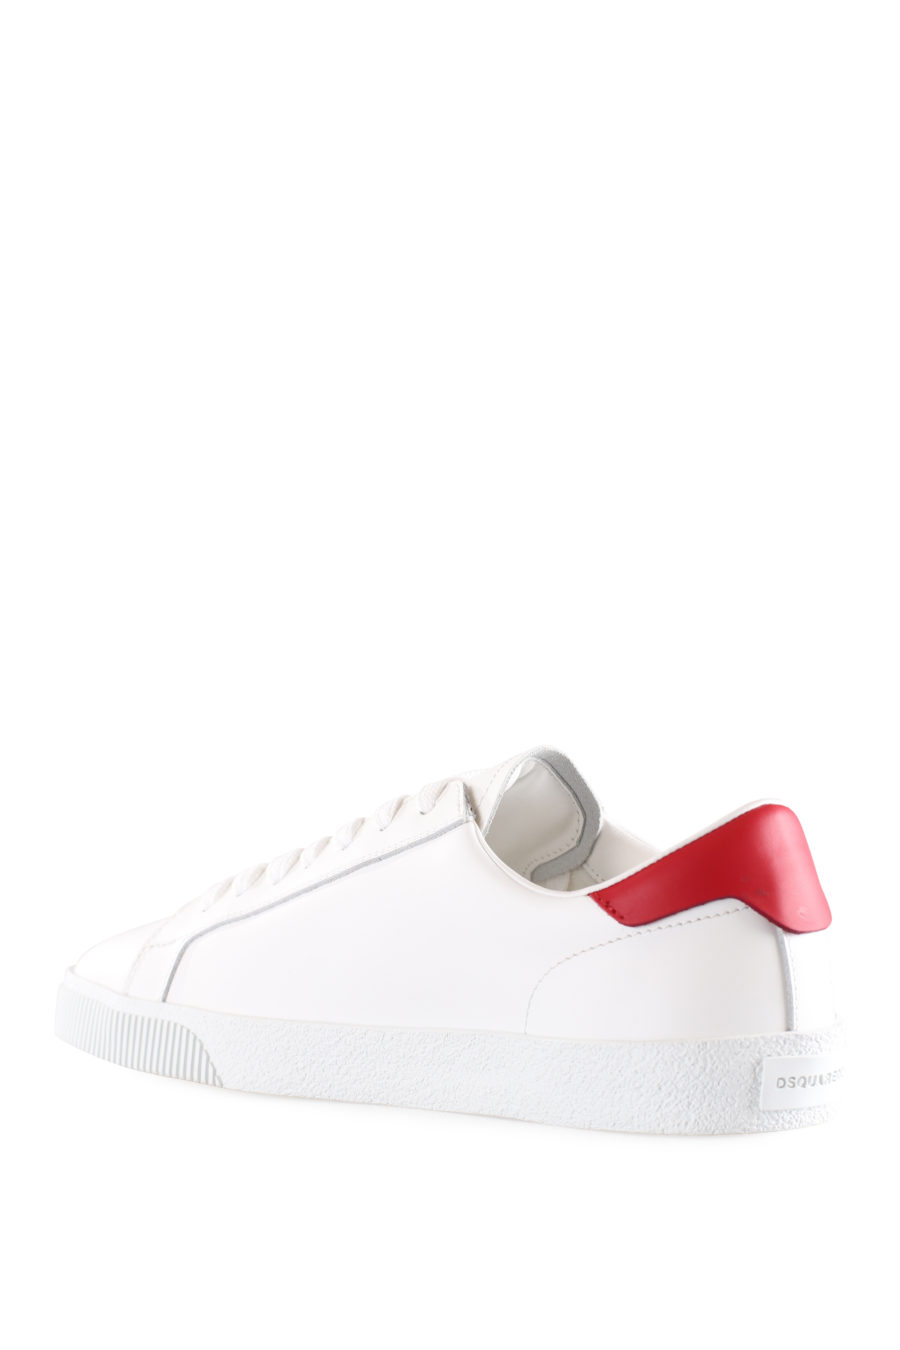 Zapatillas blancas con logo "icon" diagonal y detalle rojo - IMG 9532